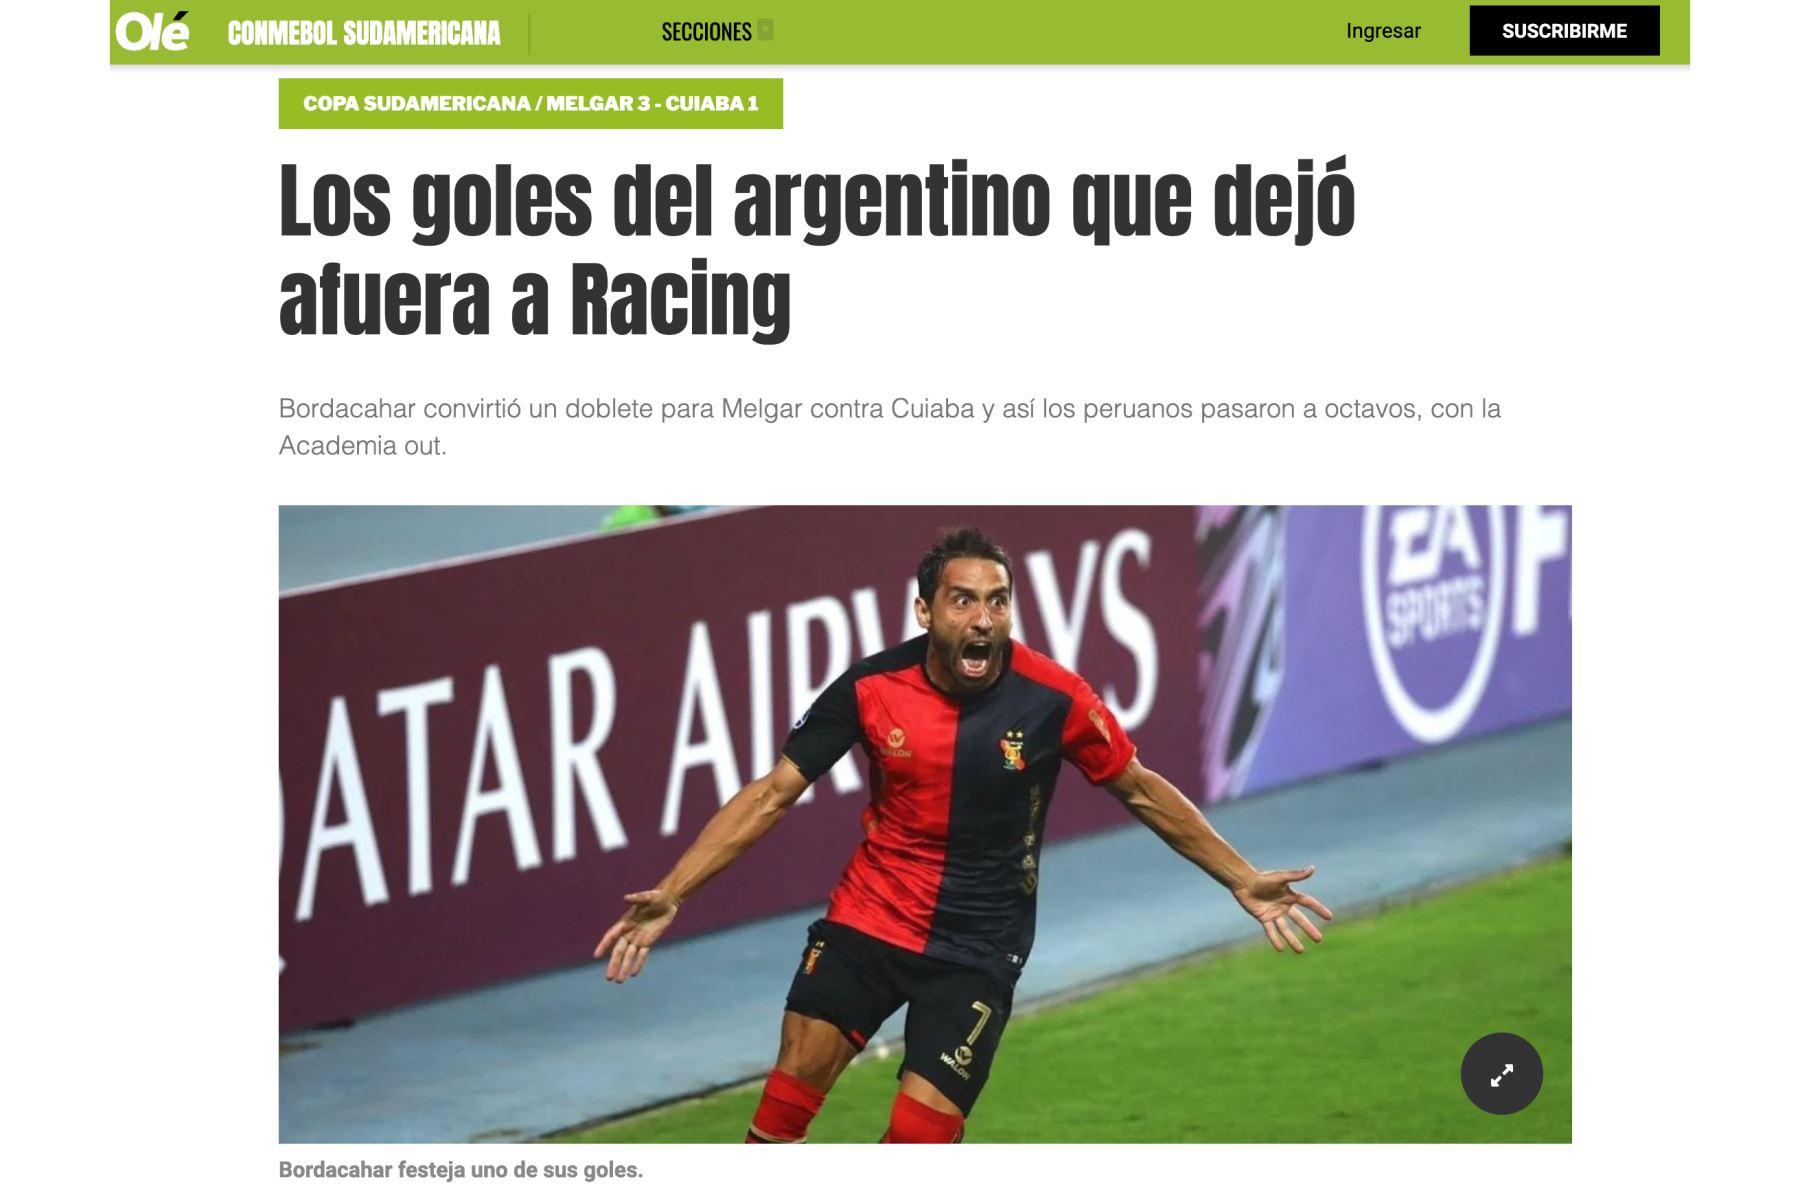 Diario Olé culpa a Bordacahar: “Los goles del argentino que dejó afuera a Racing”